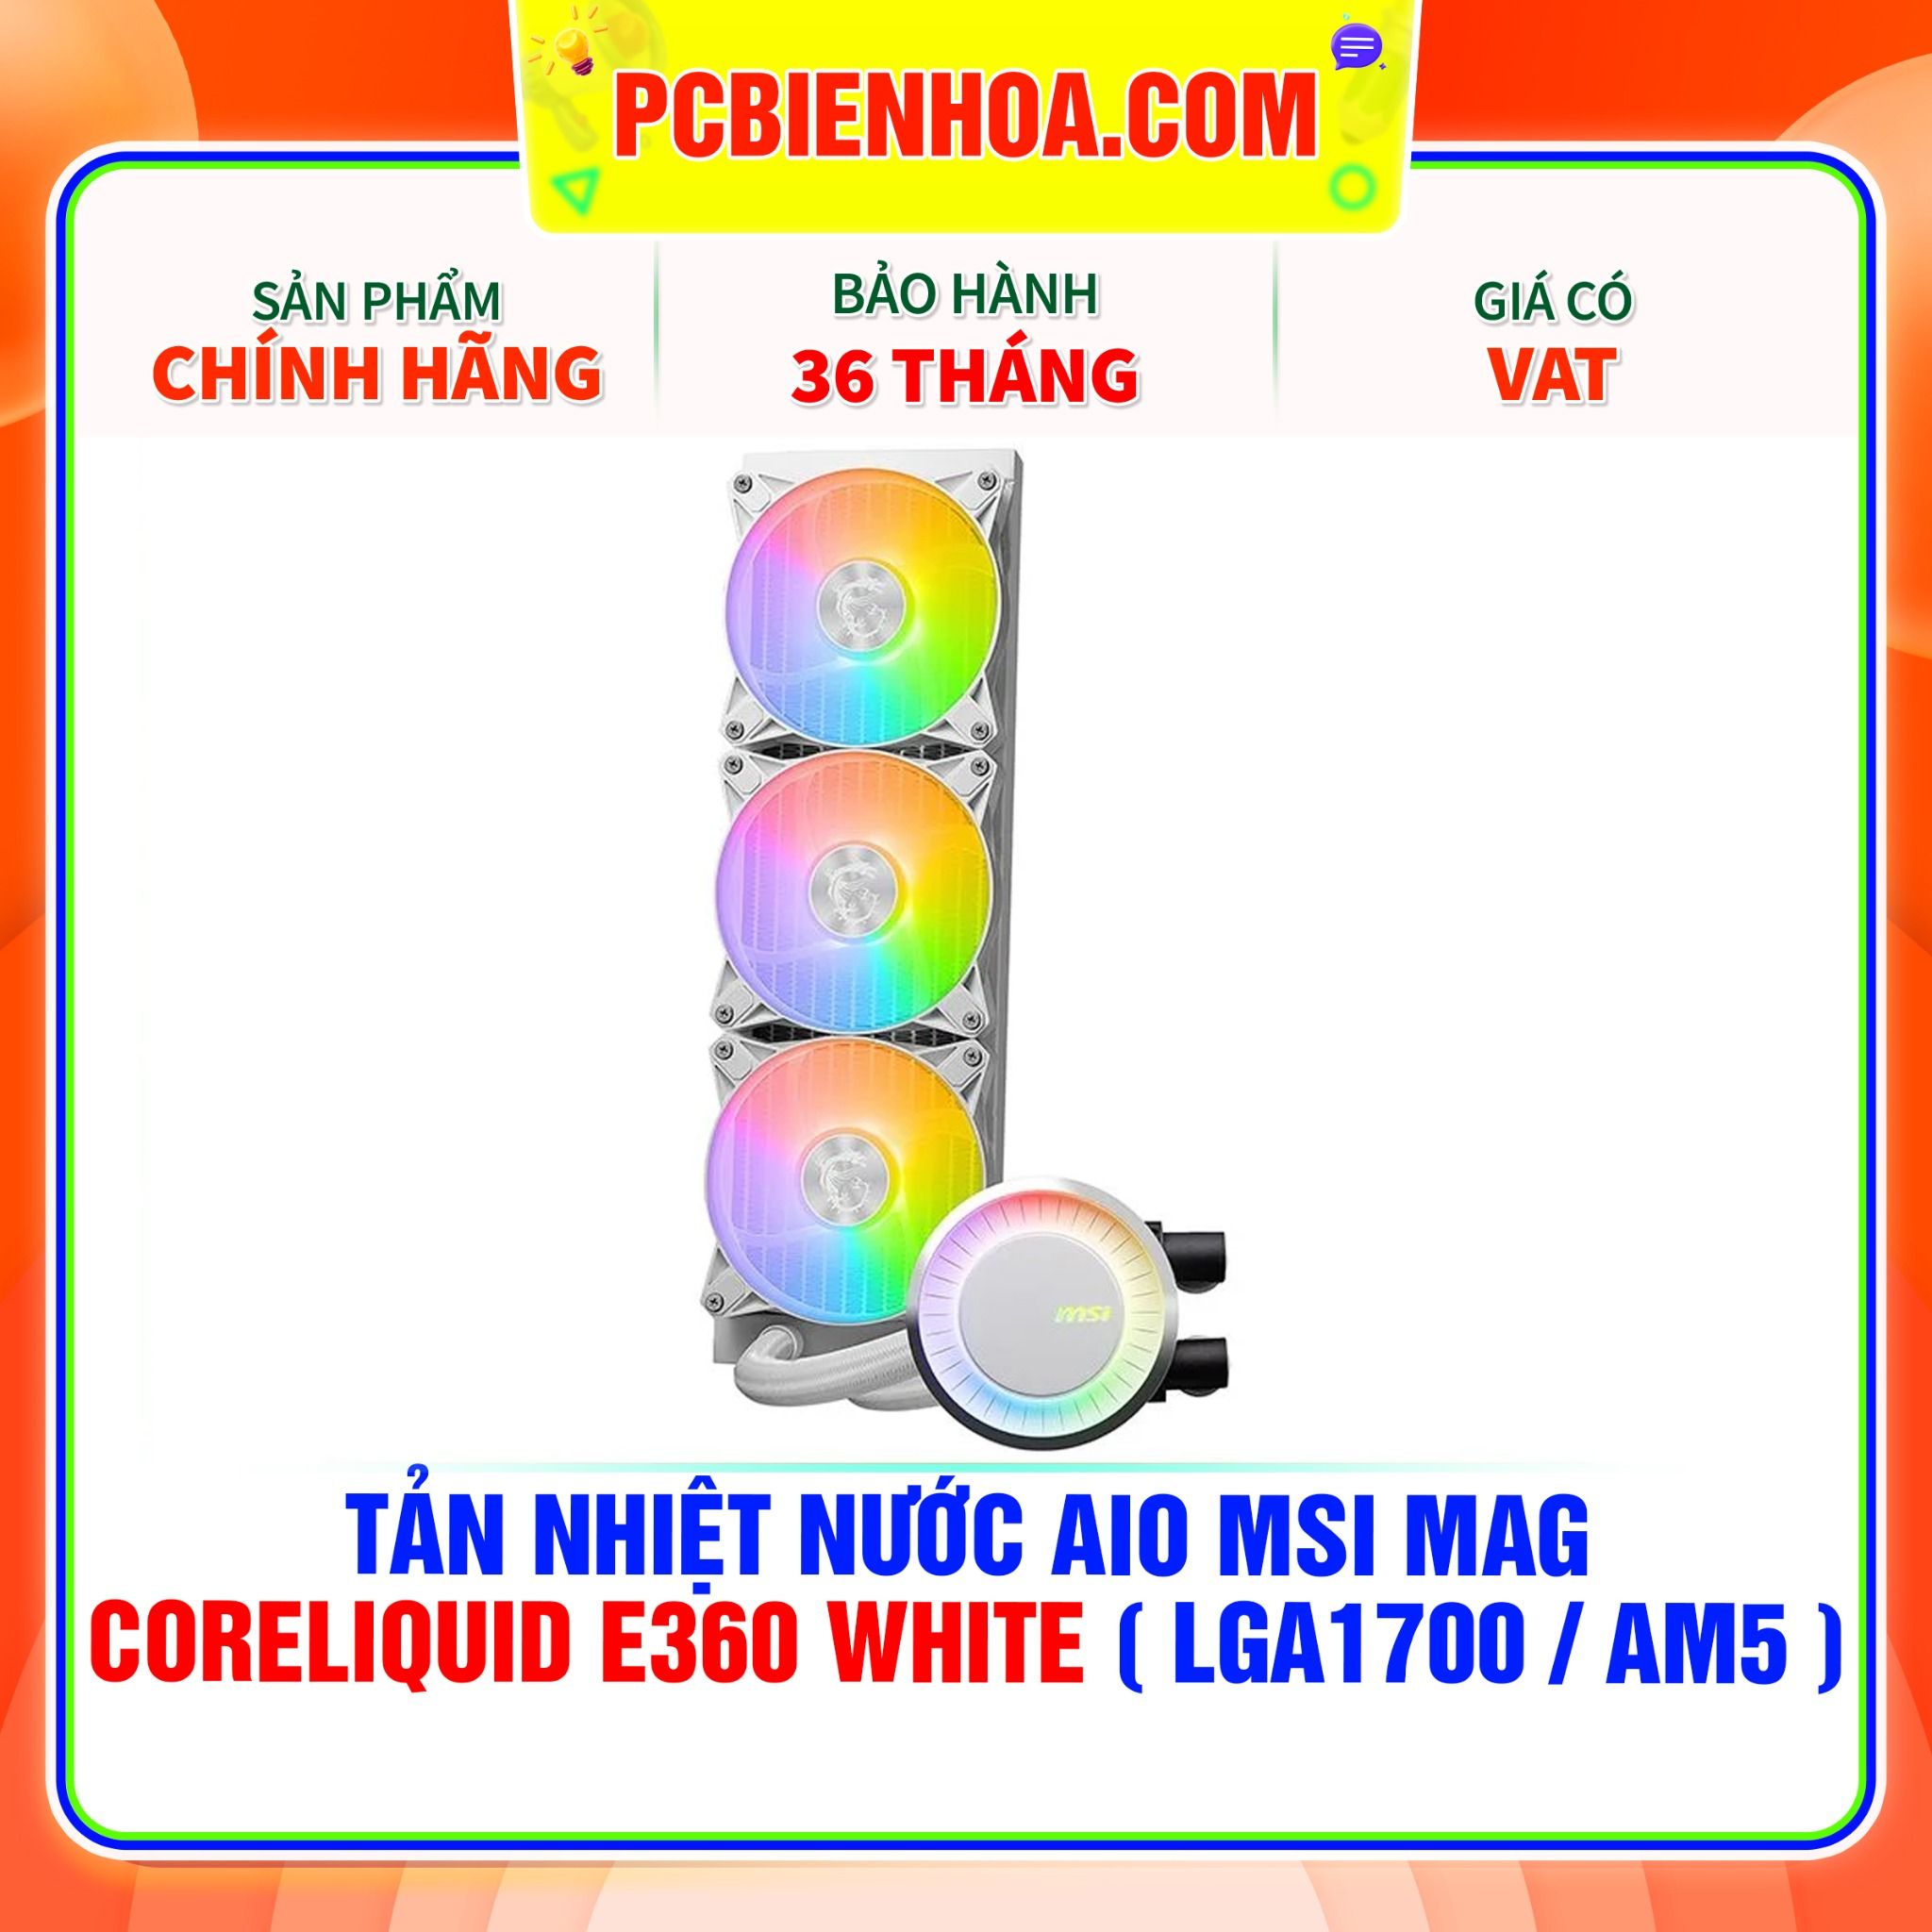  TẢN NHIỆT NƯỚC AIO MSI MAG CORELIQUID E360 WHITE ( HỖ TRỢ SOCKET LGA1700 / AM5 ) 